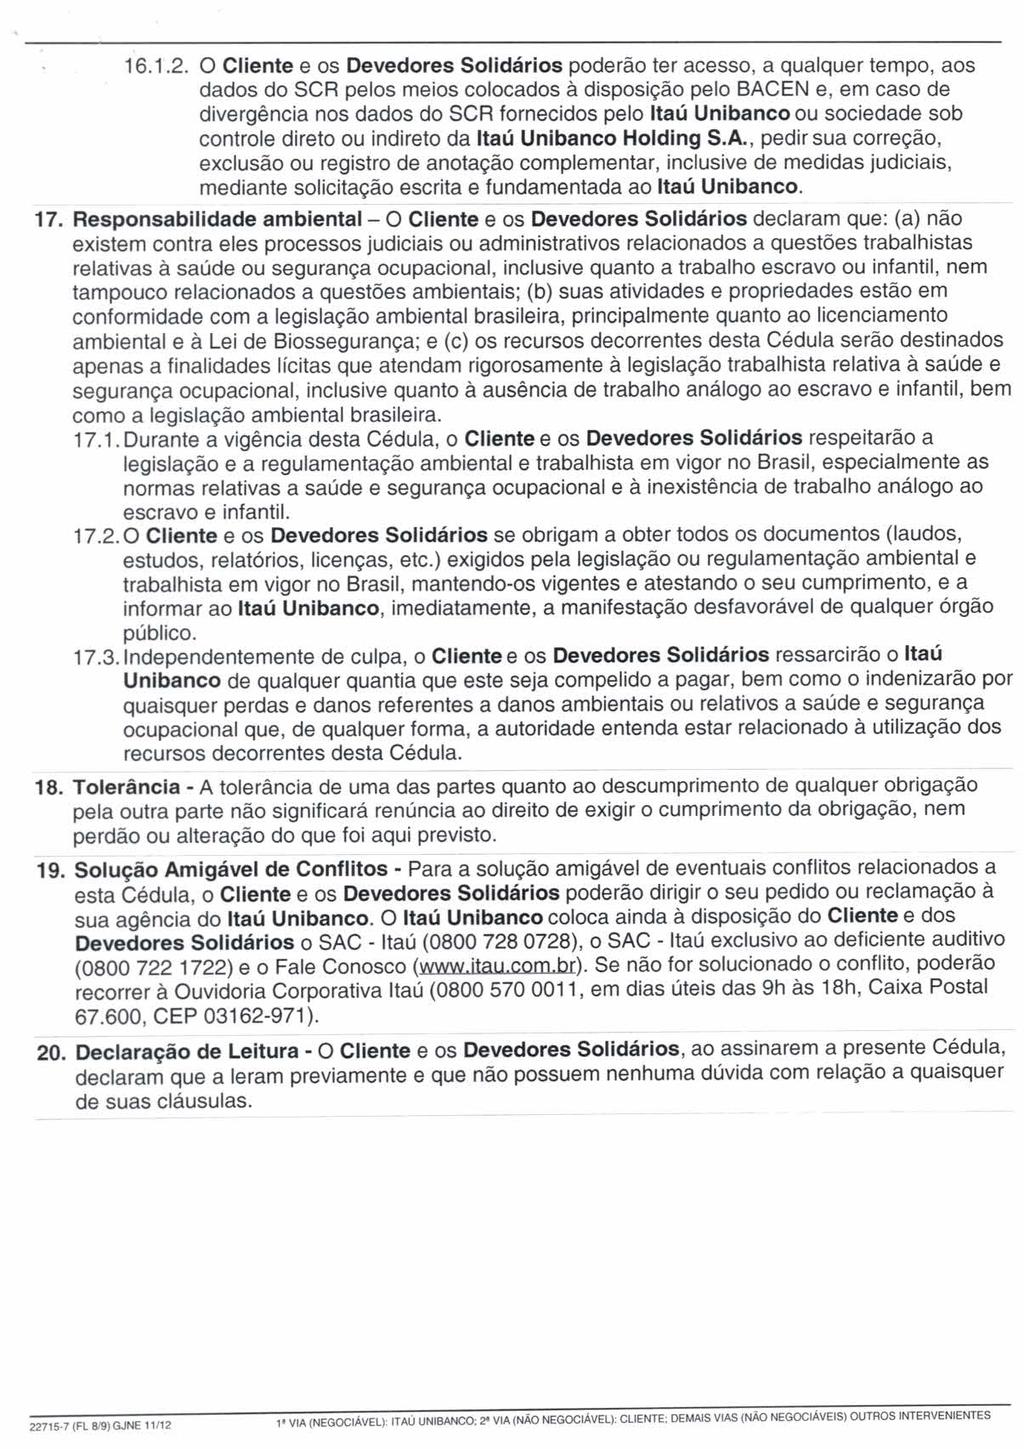 fls. 22 Este documento foi protocolado em 14/07/2015 às 11:14, é cópia do original assinado digitalmente por Tribunal de Justica Sao Paulo e